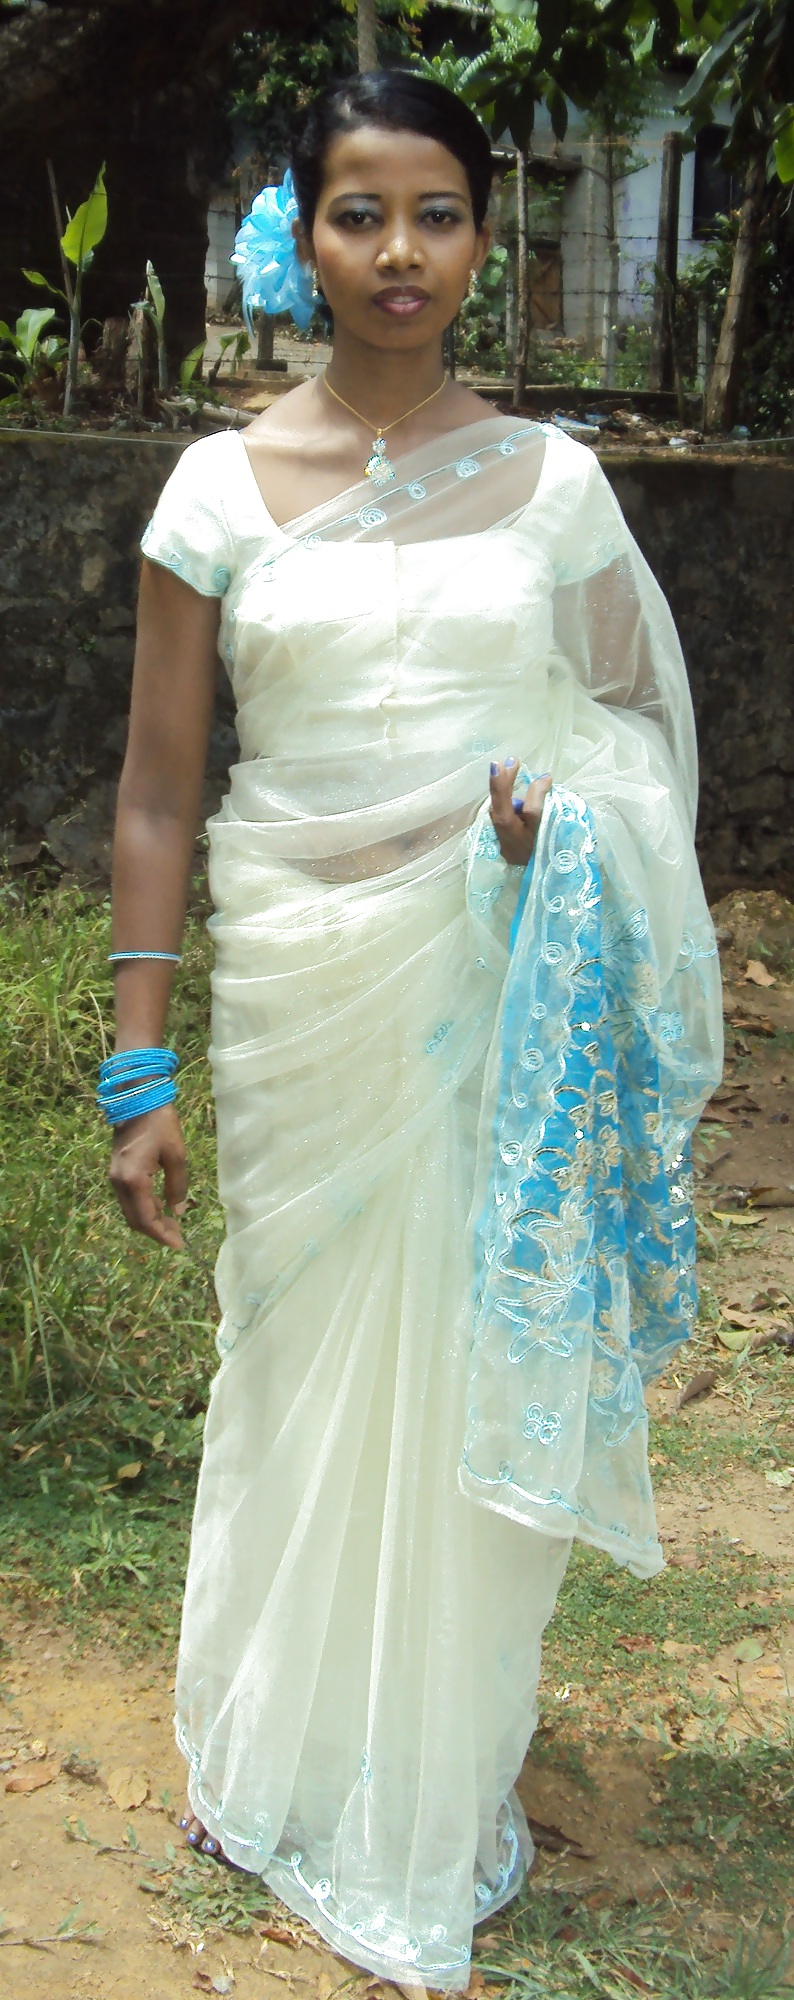 Srilankische Frau Ausgesetzt #21620191